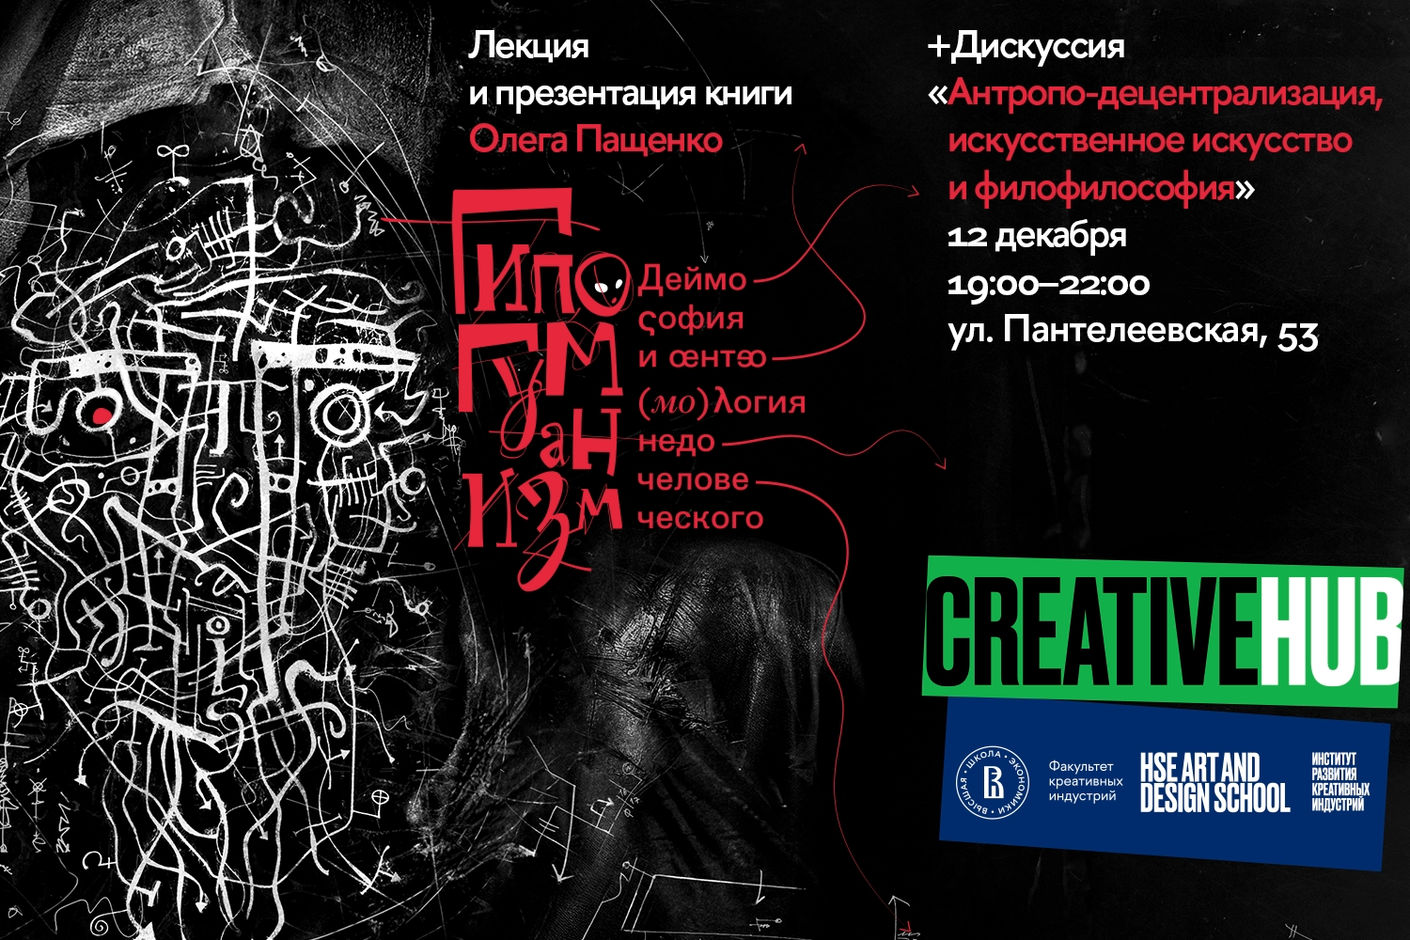 Презентация книги Олега Пащенко «Гипогуманизм» и дискуссия «Антропо-децентрализация, искусственное искусство и филофилософия»